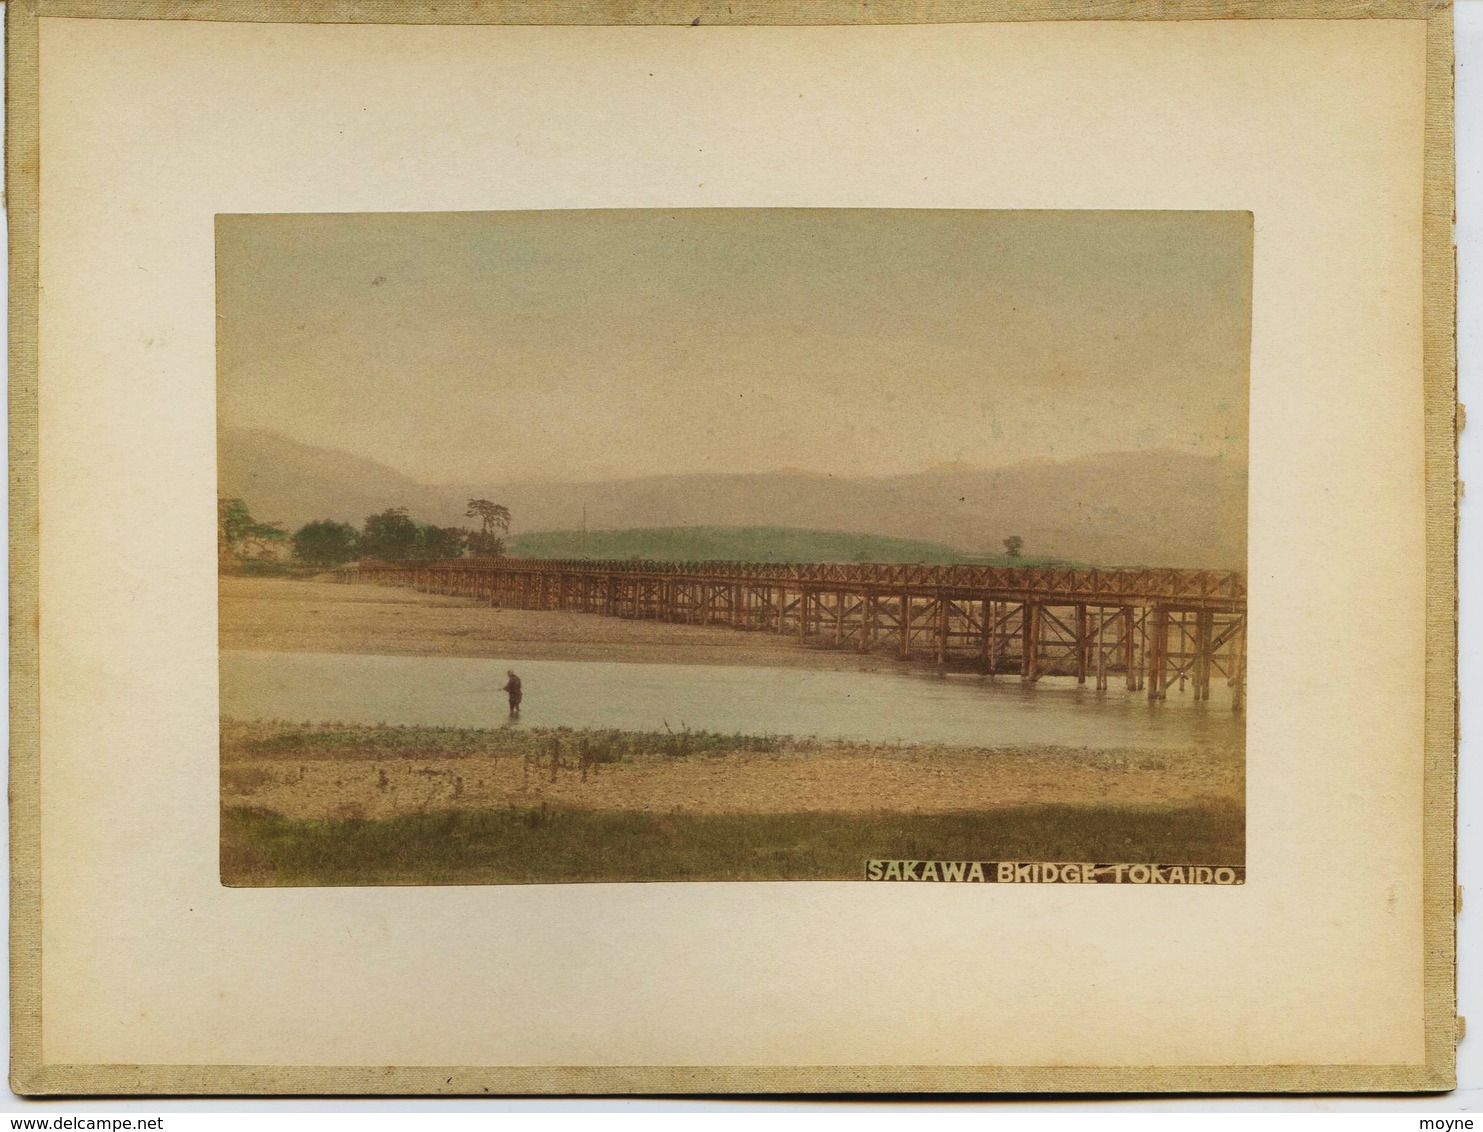 2 Photos Du Japon - XIXéme - Sur Papier Albuminé - 1) SAKAWA BRIDGE TOKAIDO ( Disparu ?? )  - 2) MARCHE AUX FLEURS ?? - Old (before 1900)